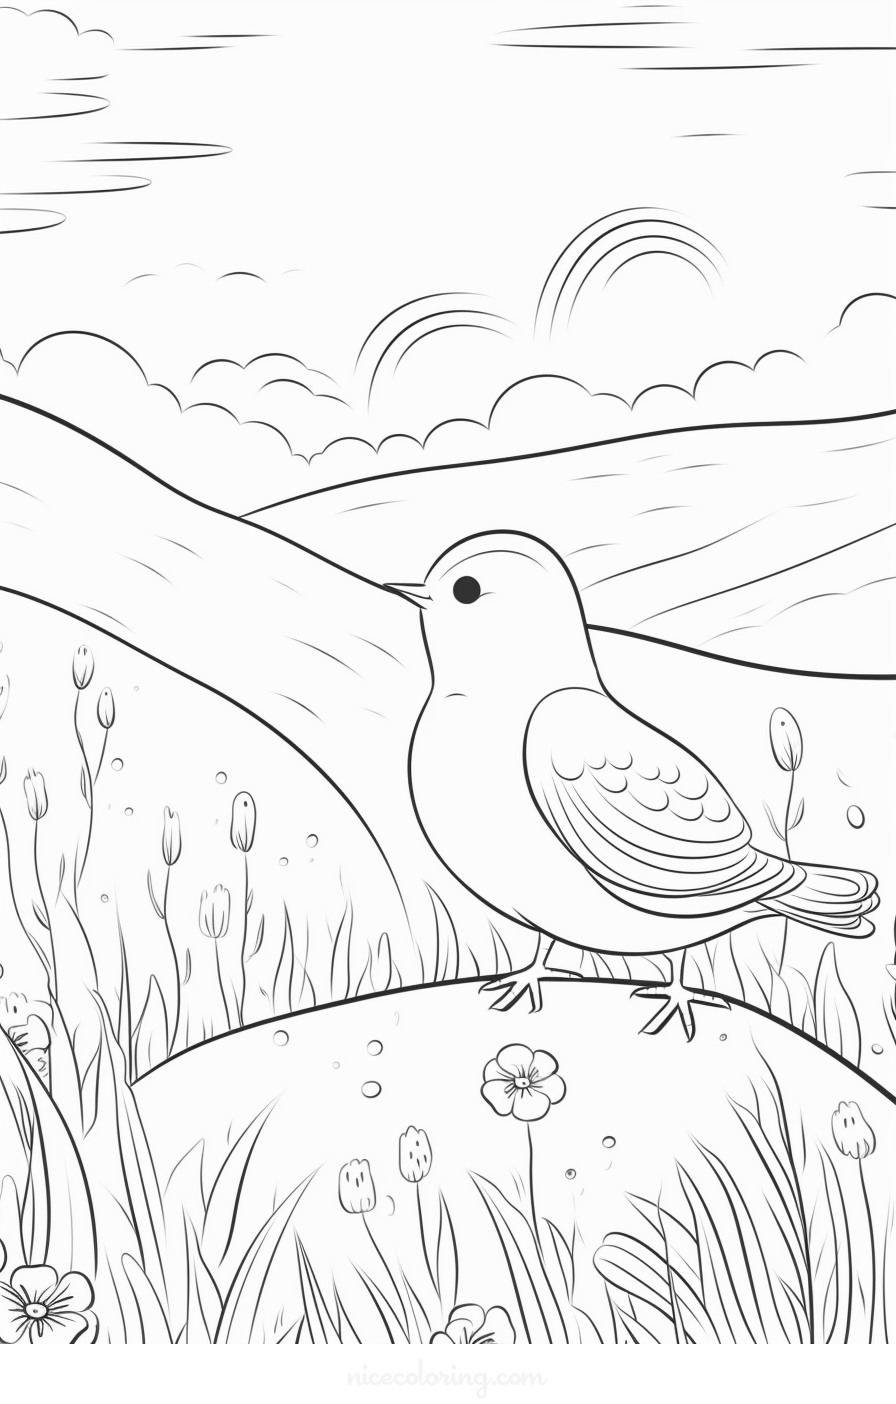 खिलती शाखा पर बैठा हुआ रंग-बिरंगा पक्षी